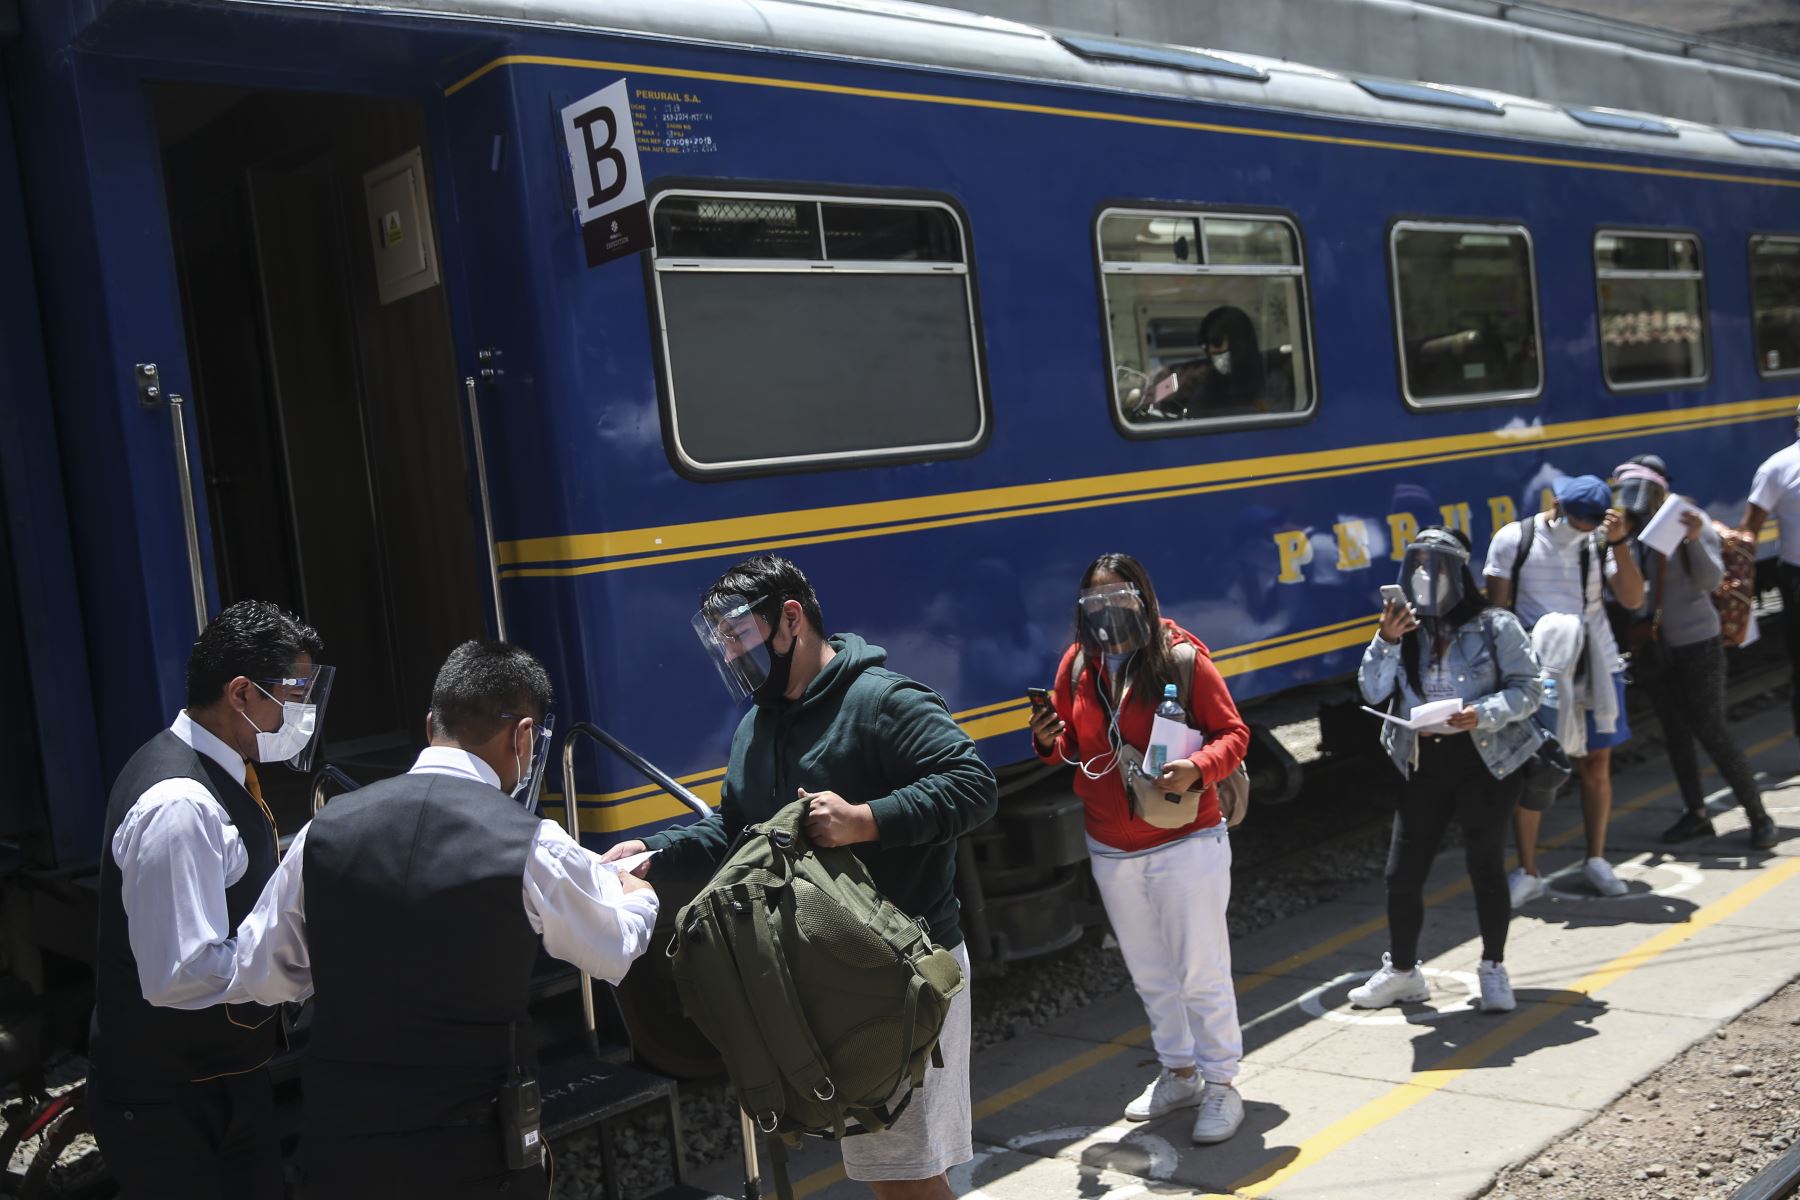 A las 08:30 horas partirá el primer tren de la estación de Ollantaytambo con destino a Machu Picchu pueblo. ANDINA/Jhonel Rodríguez Robles